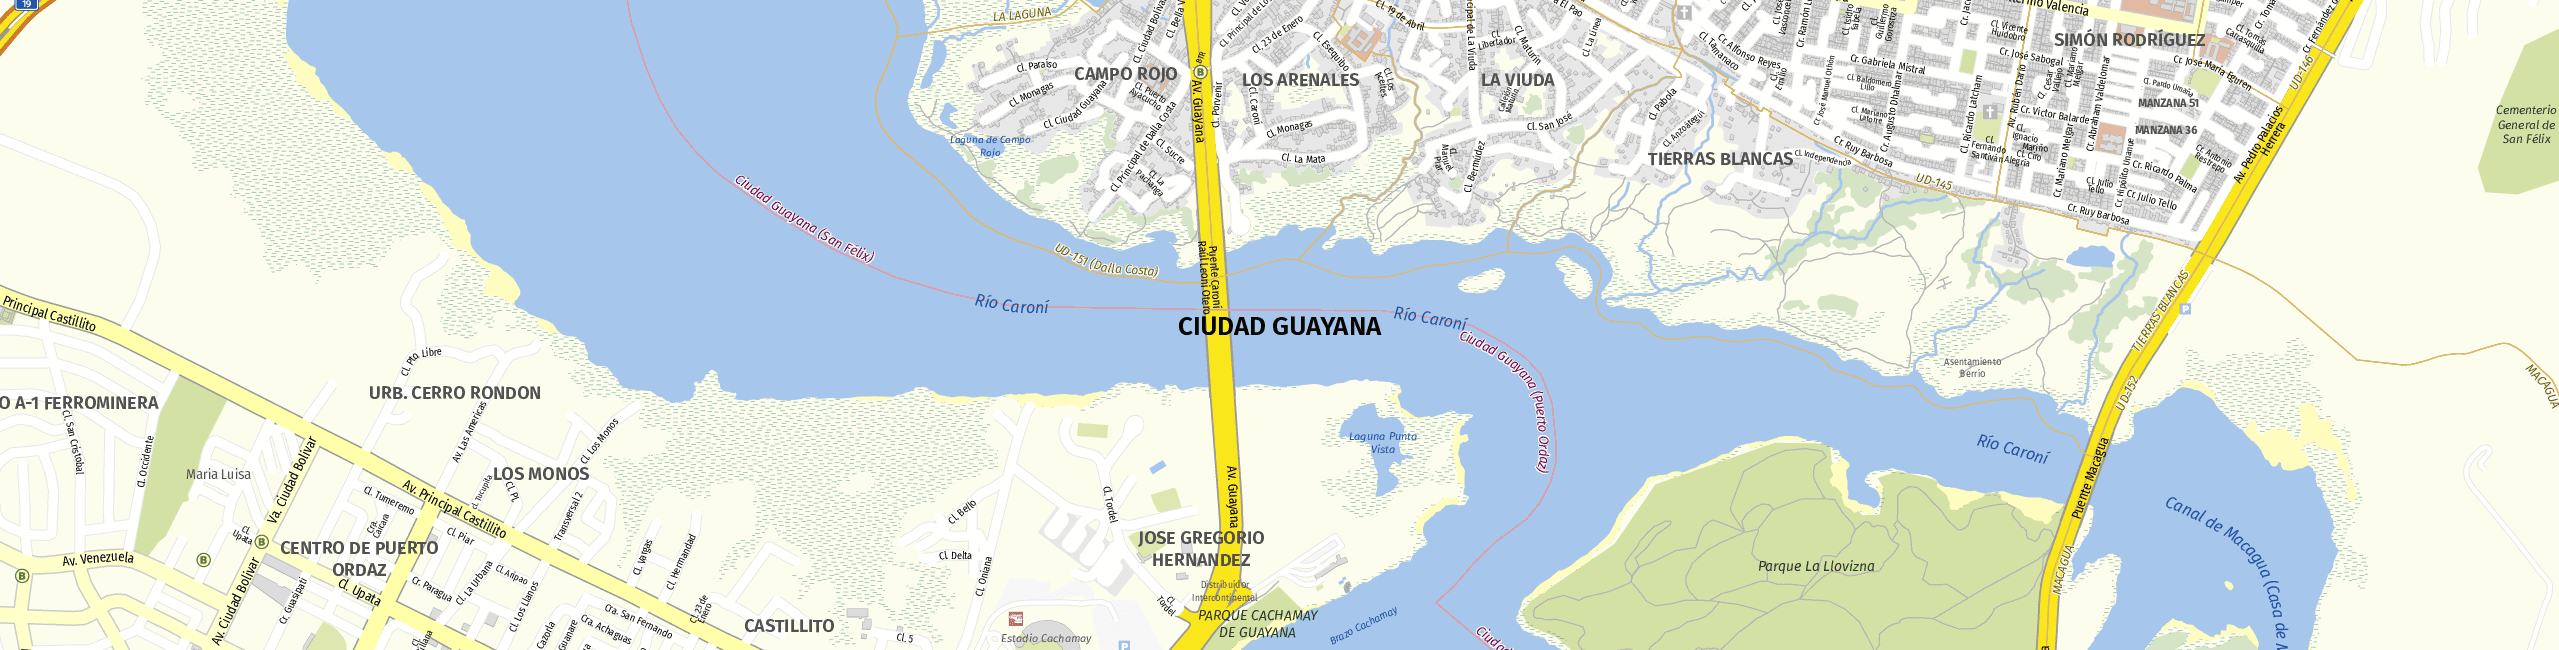 Stadtplan Ciudad Guayana zum Downloaden.